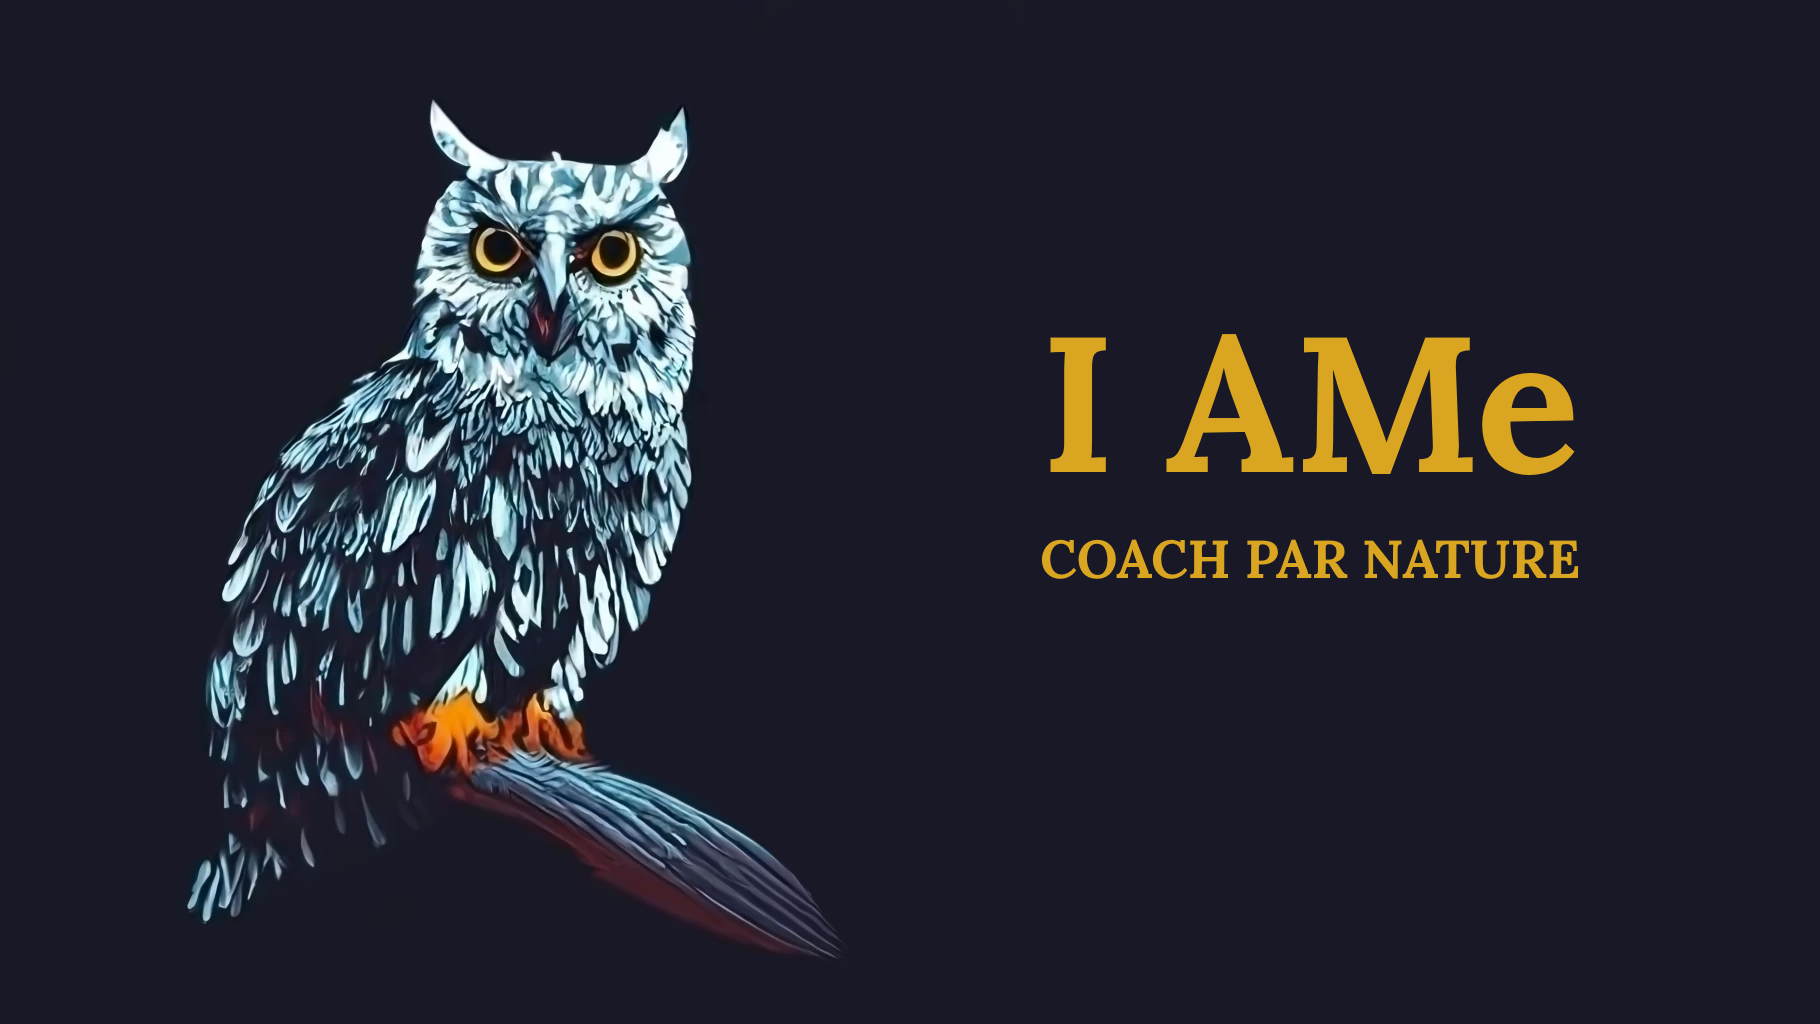 I AMe - Coach par Nature